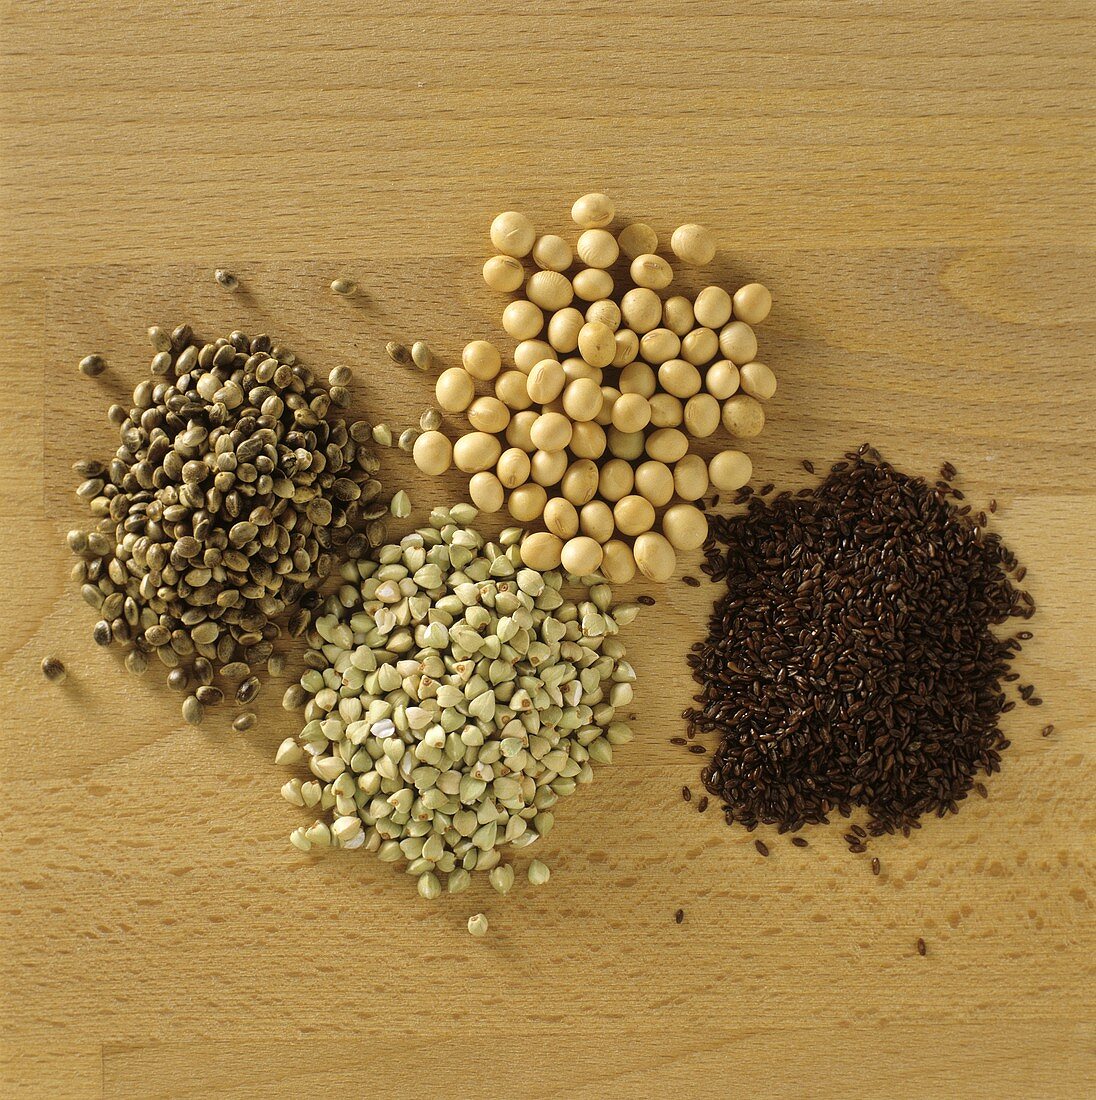 Various grains and seeds (bread ingredients)